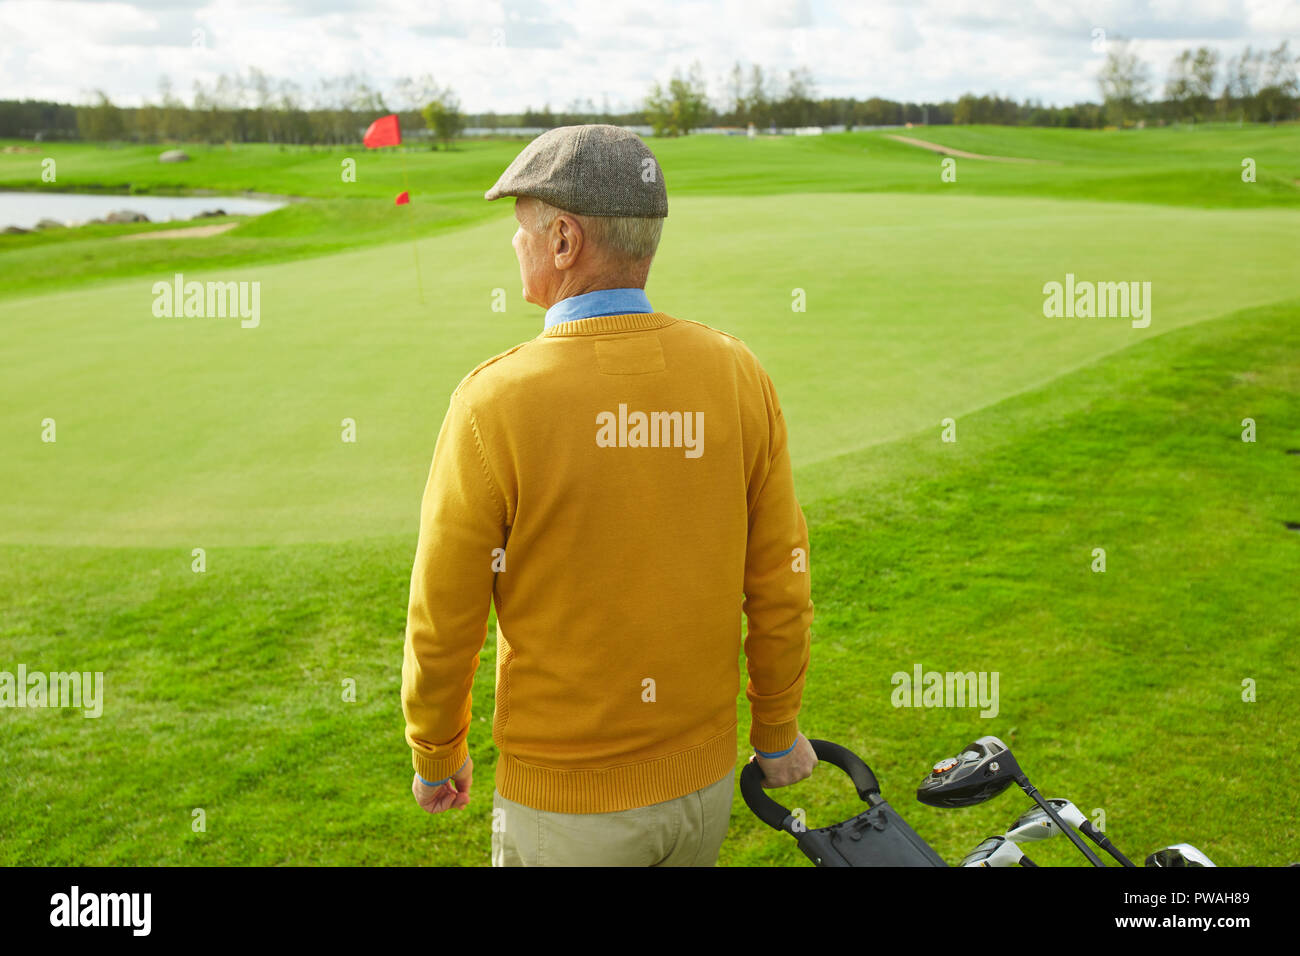 Vue arrière de casual man pulling sportive sac avec clubs de golf tout en se déplaçant vers le bas champ vert pour jouer au golf Banque D'Images